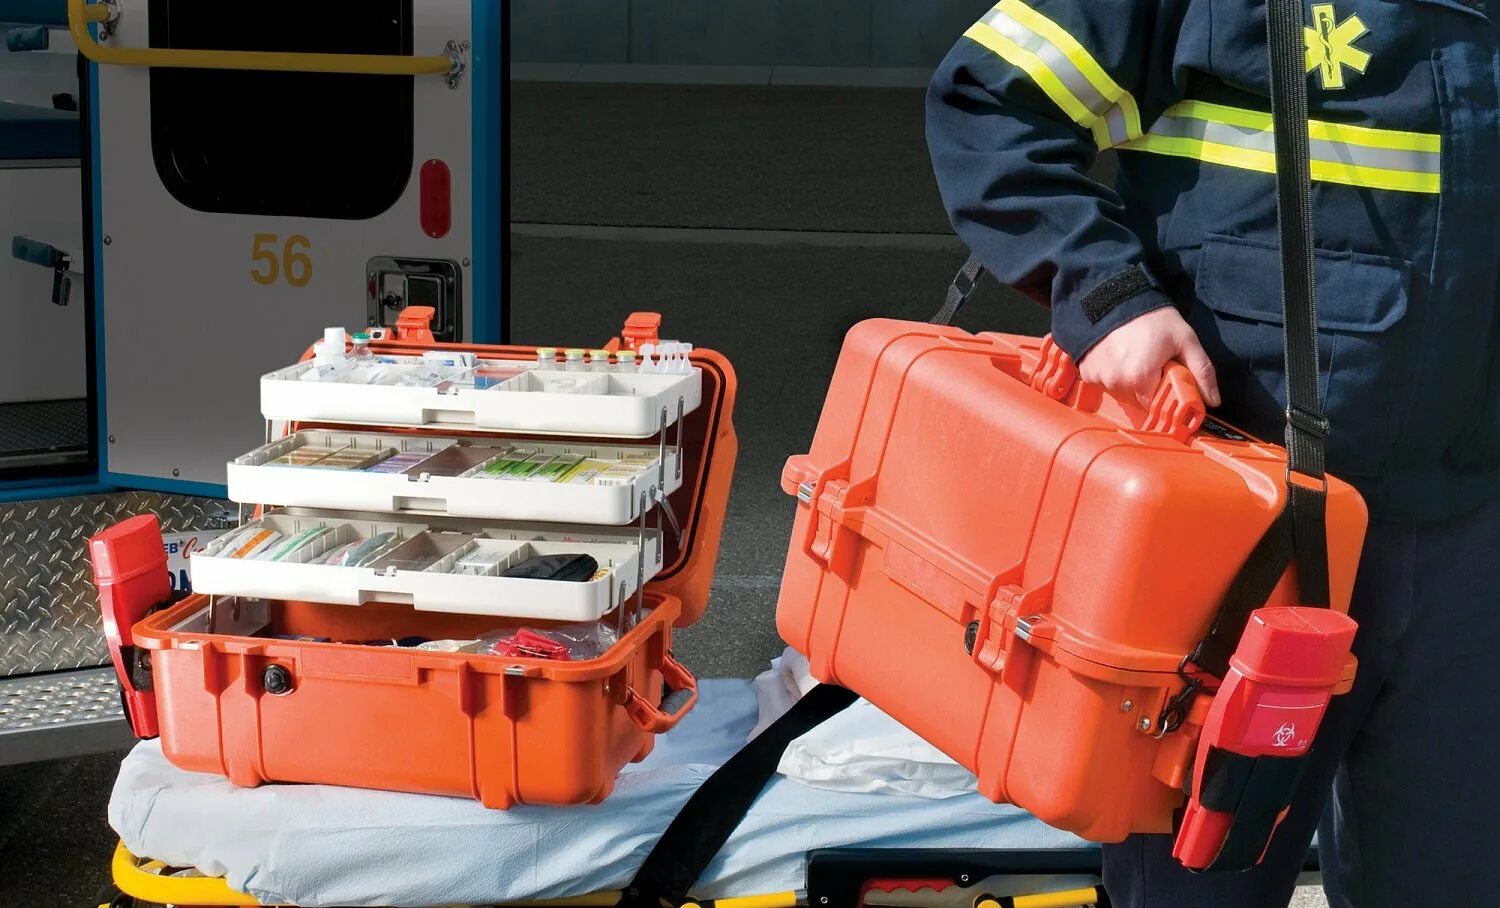 Укладка врача скорой медицинской. Кейс peli 1460 ems. Оранжевый чемоданчик скорой помощи. Медицинский чемодан для скорой. Чемодан фельдшера.